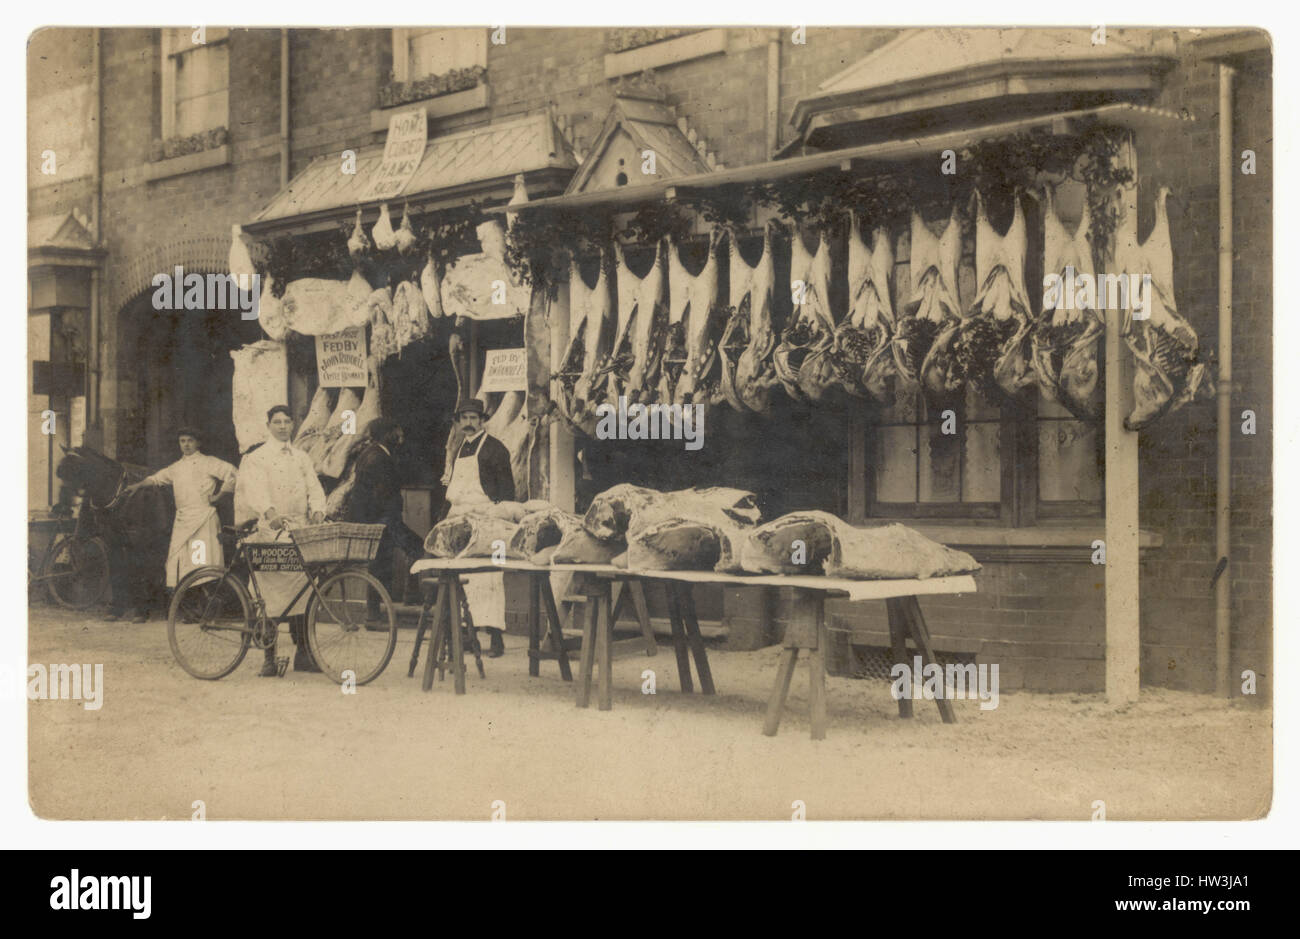 Postkarte der ursprünglichen Edwardianischen Ära, in der Fleisch- und Rindfleisch draußen hängen, mit Männern - Personal / Assistent / Assistenten und Lieferfahrrad, Erdington, Birmingham, England, Großbritannien um 1905 Stockfoto